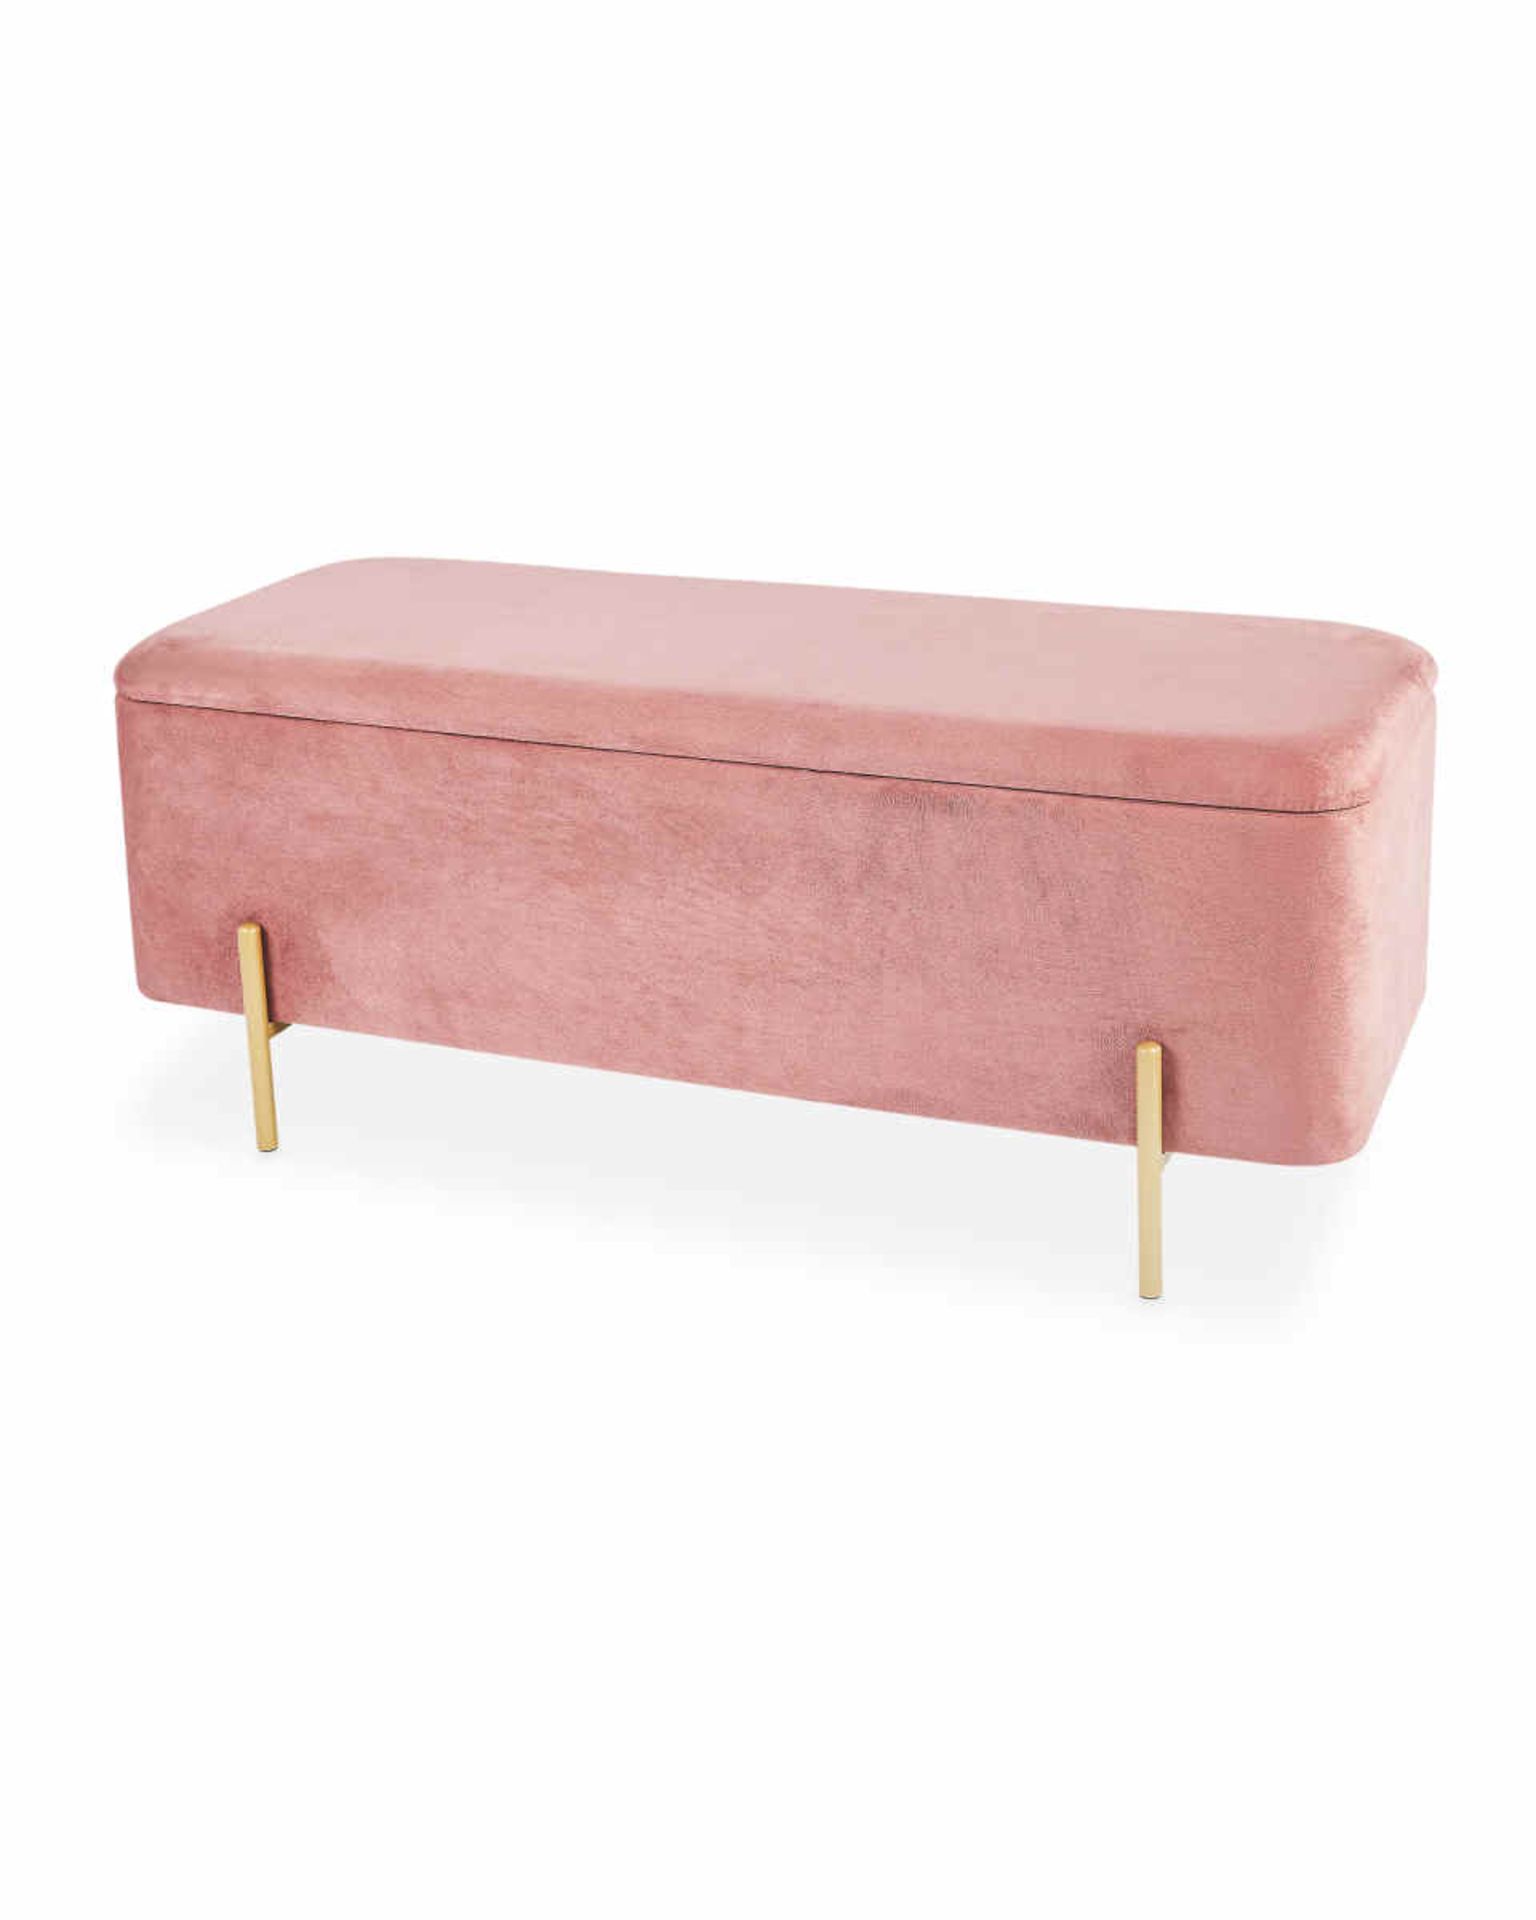 Pink Velvet Storage Bench.Upgrade your bedroom with this Kirkton House Pink Velvet Storage Bench.